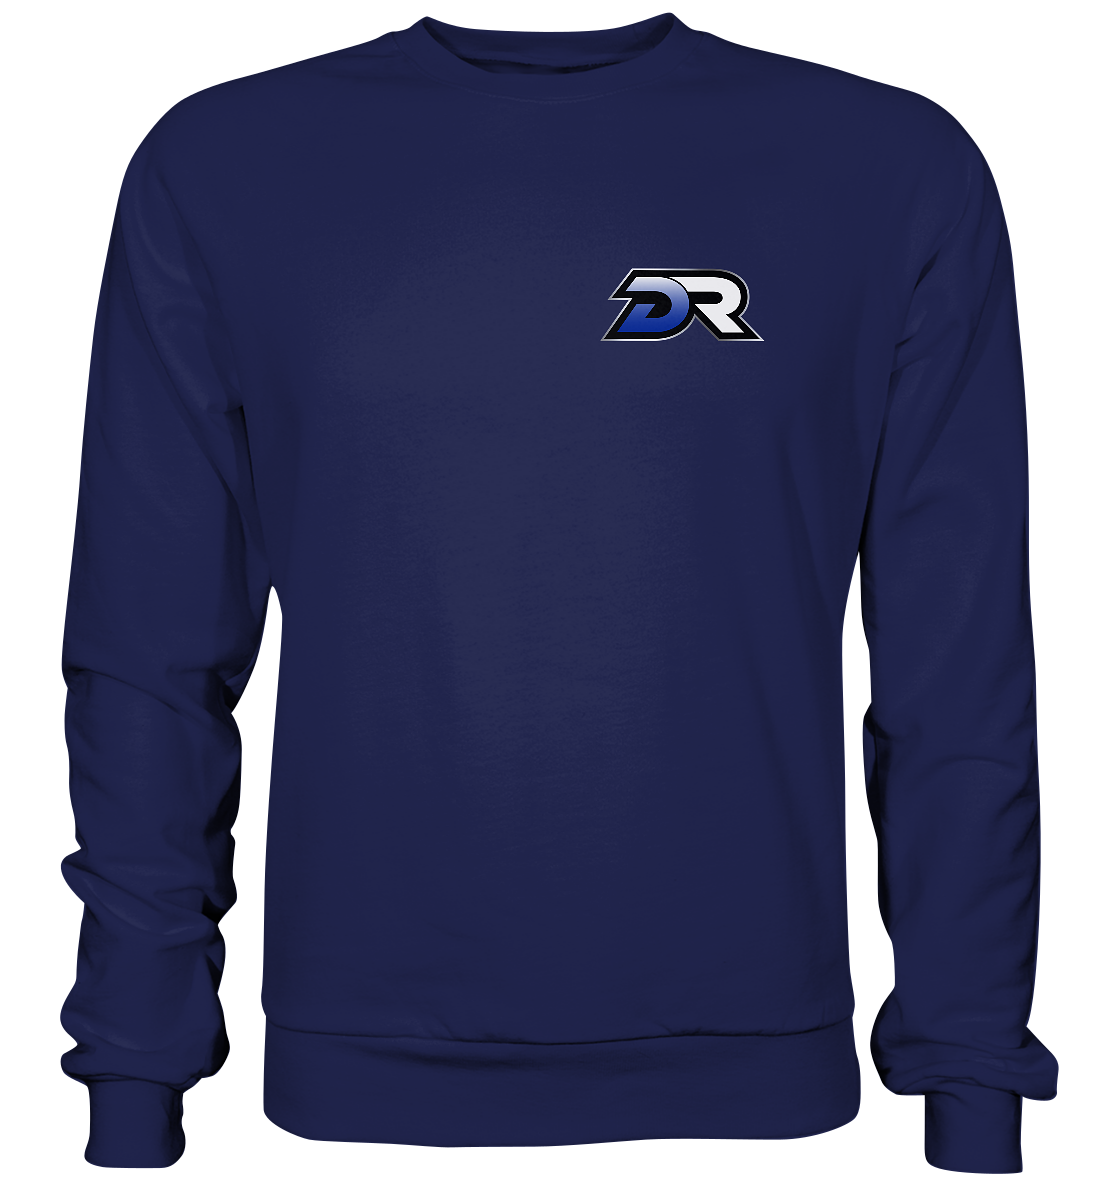 DARK RUFFNECKS ESPORTS - Basic Sweatshirt